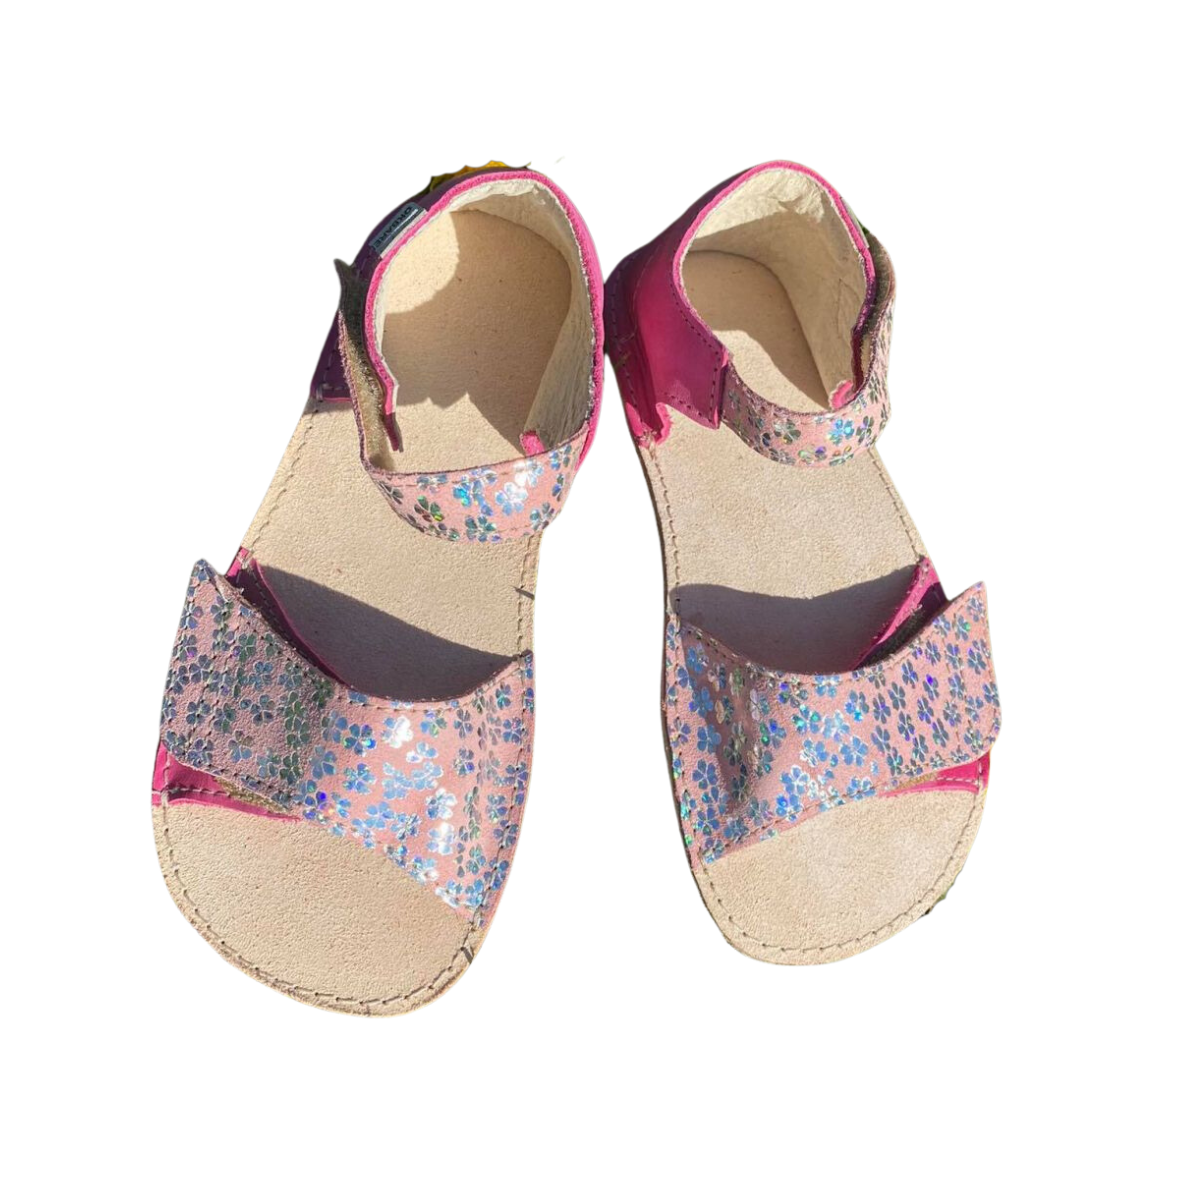 Barefoot OKBARE barefoot sandálky Mirisa D203 G fuchsiová/růžová třpytivá bosá